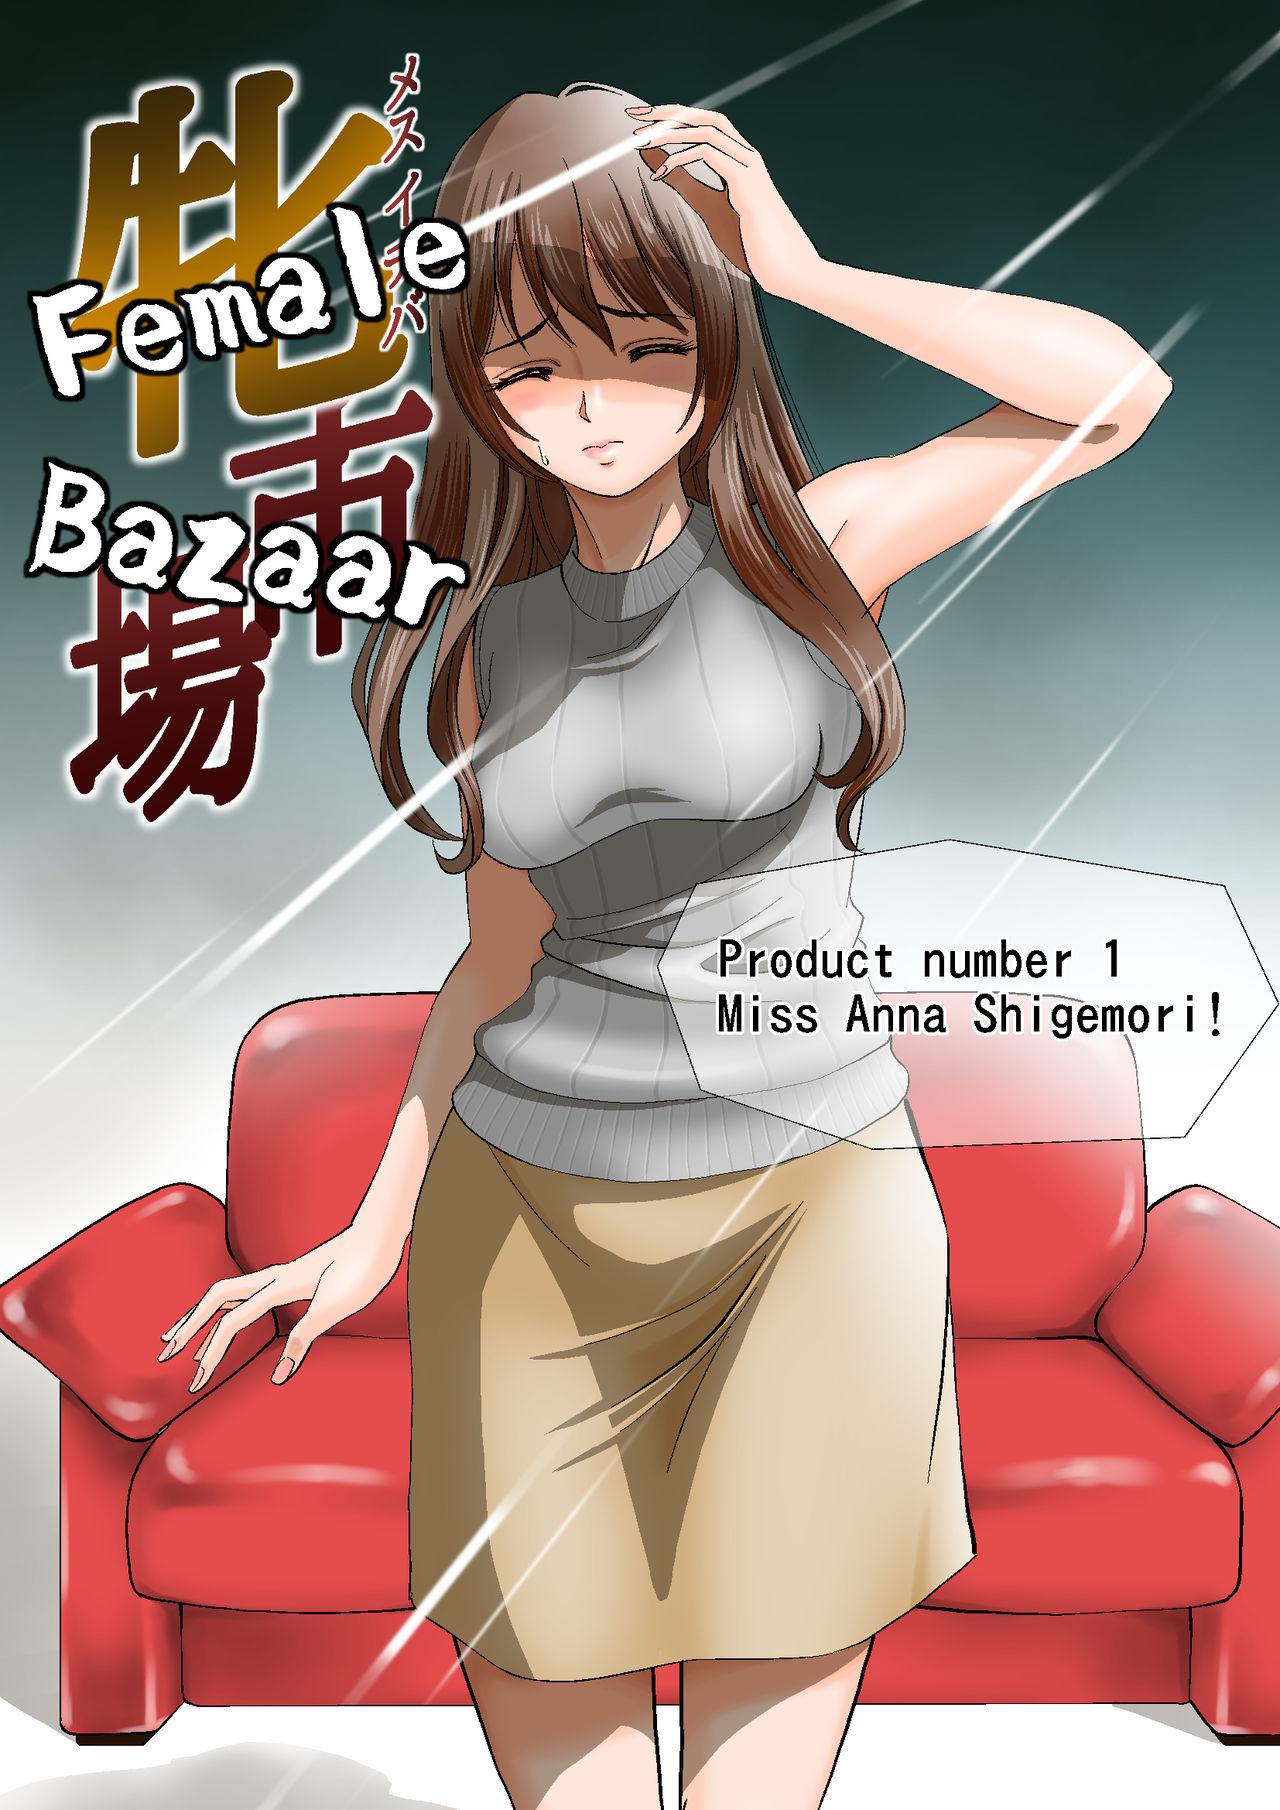 Free Amature Porn Female Bazaar Cam Girl - Picture 3